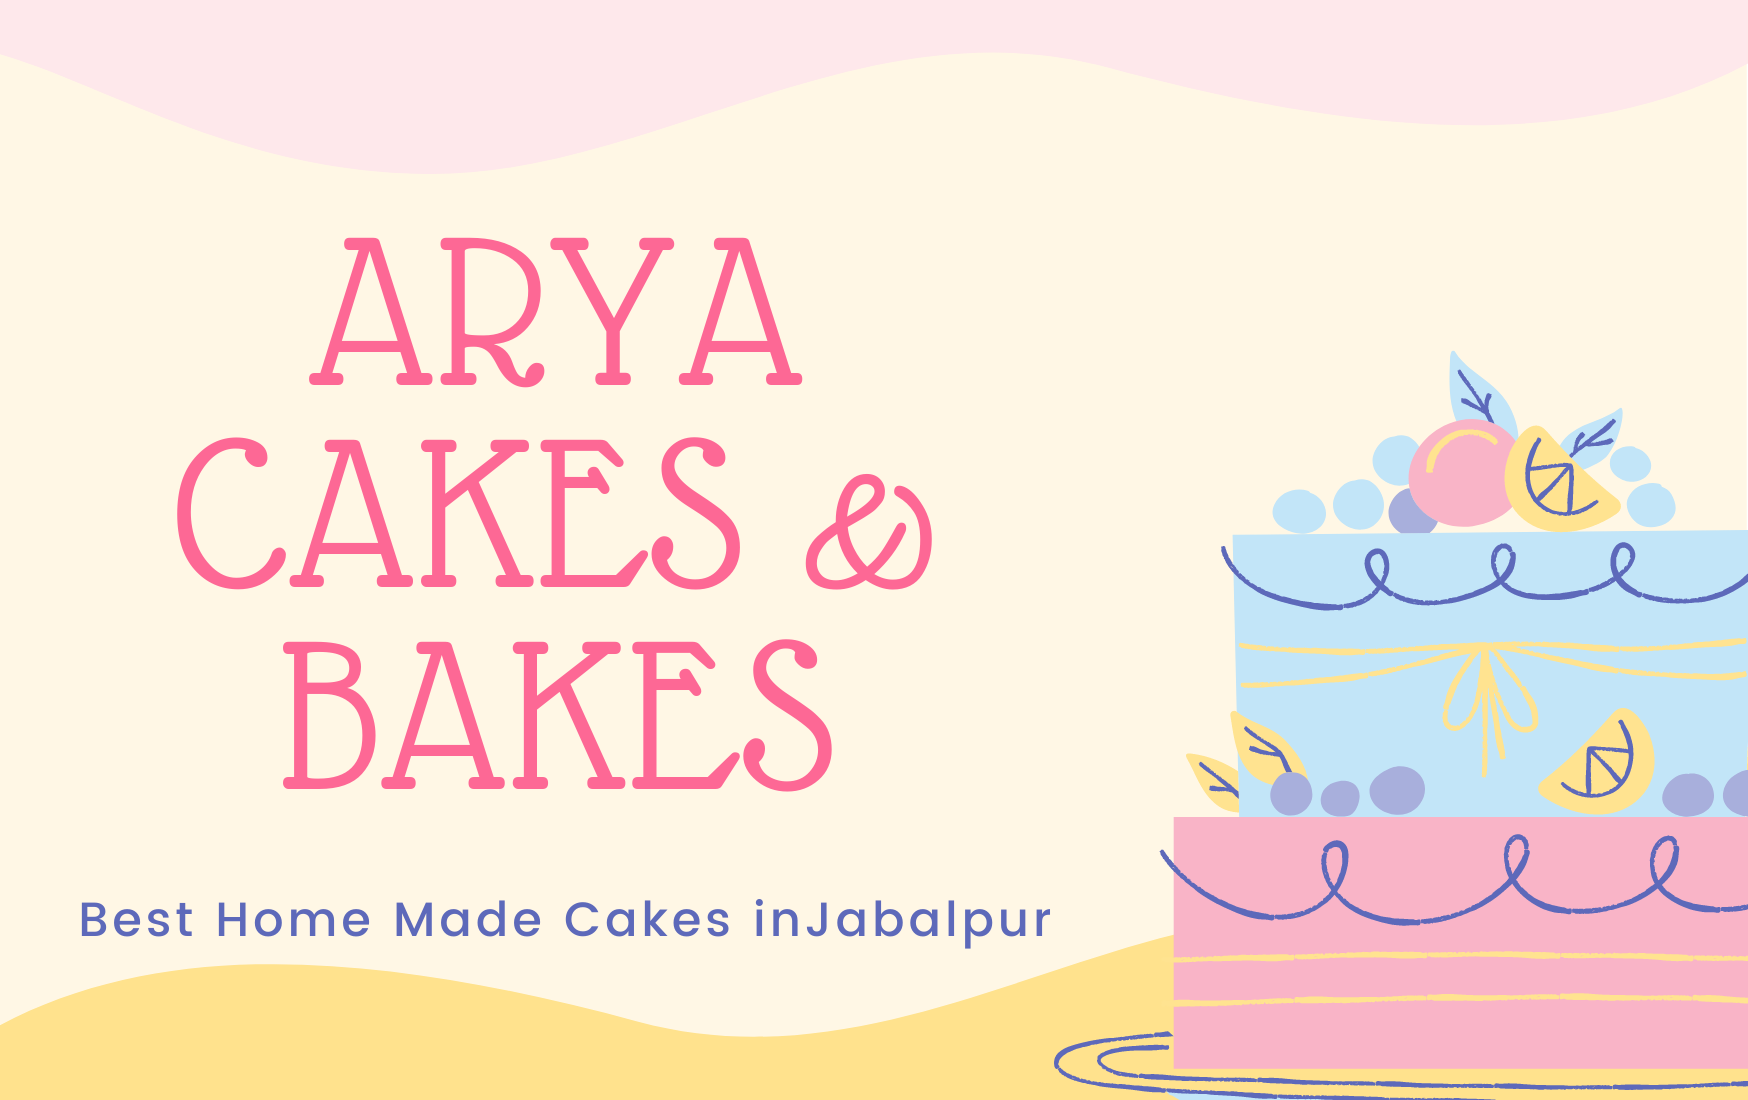 The Cake Company- Bakery & Coffee Cafe, Jabalpur, Shop No. 6 - Restaurant  menu and reviews